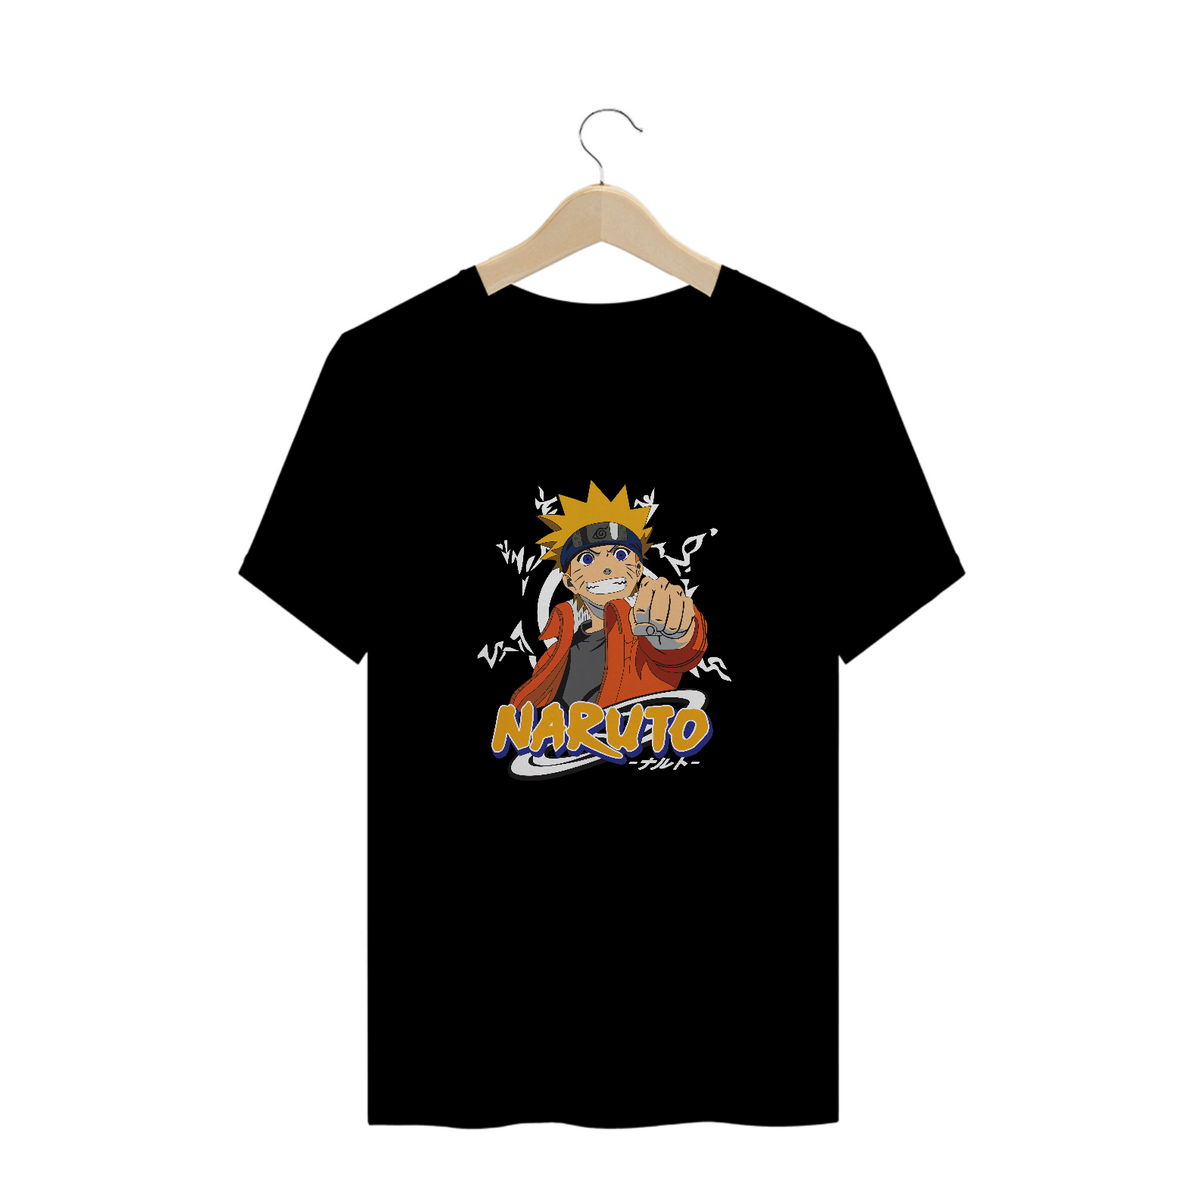 Nome do produto: Camisa Naruto II